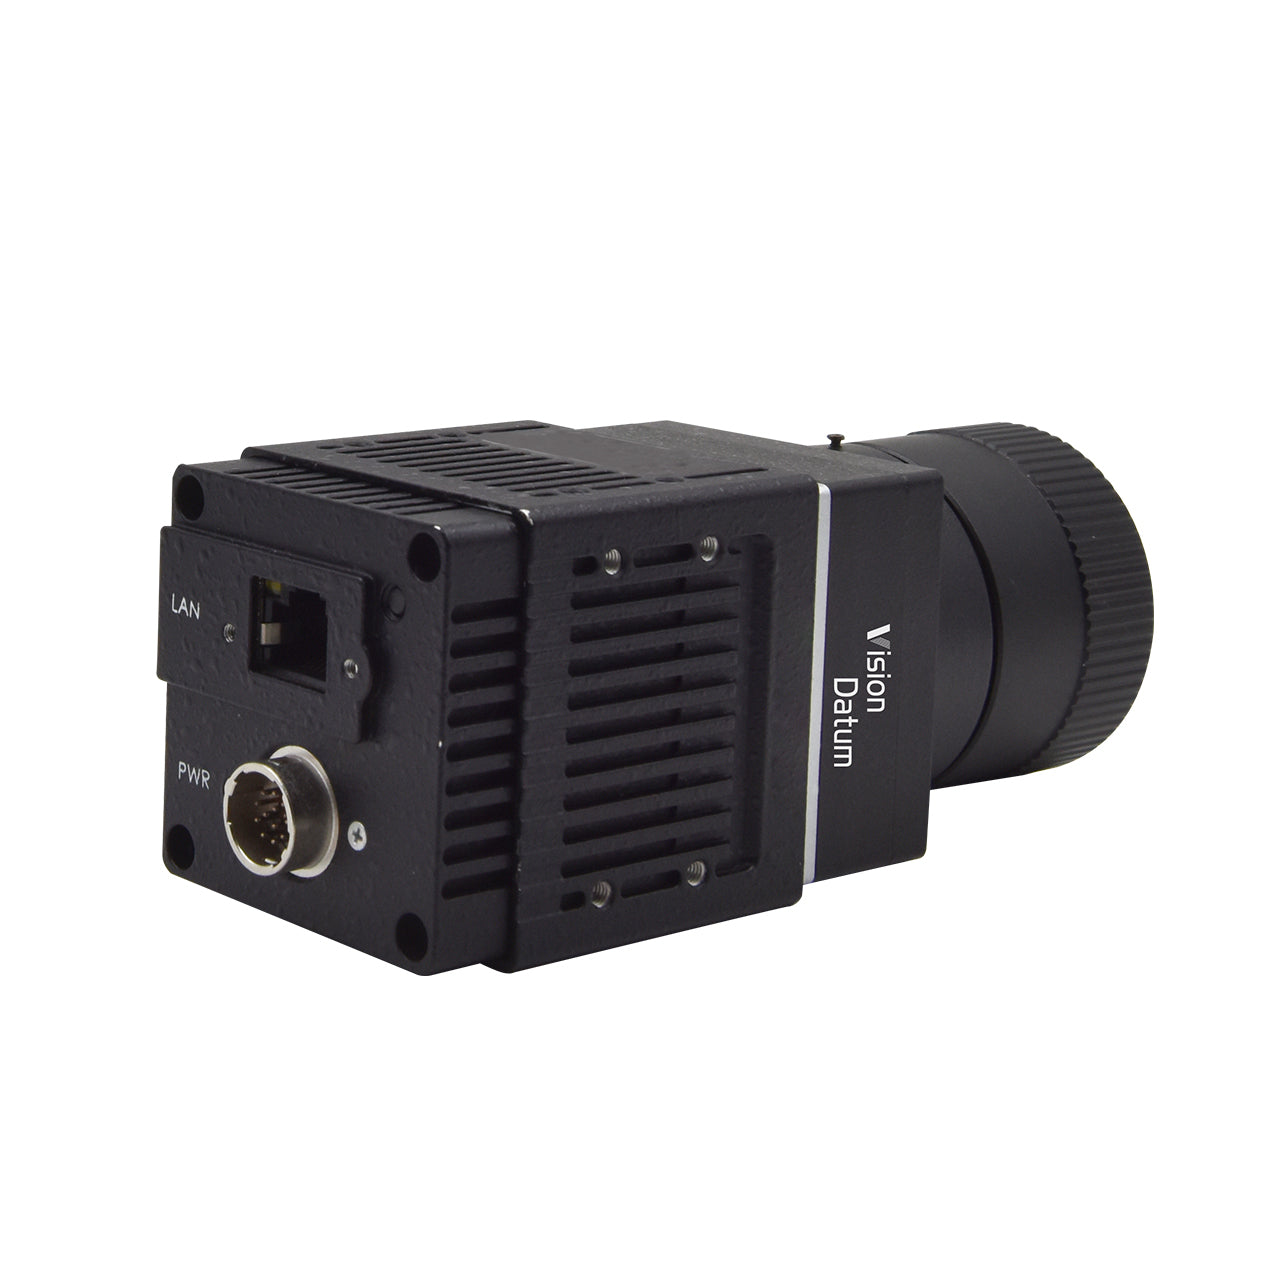 Ungekühlte LWIR-Wärmebildkamera zur Sicherheitsüberwachung, industrielle Temperaturmessung, optionales Objektiv